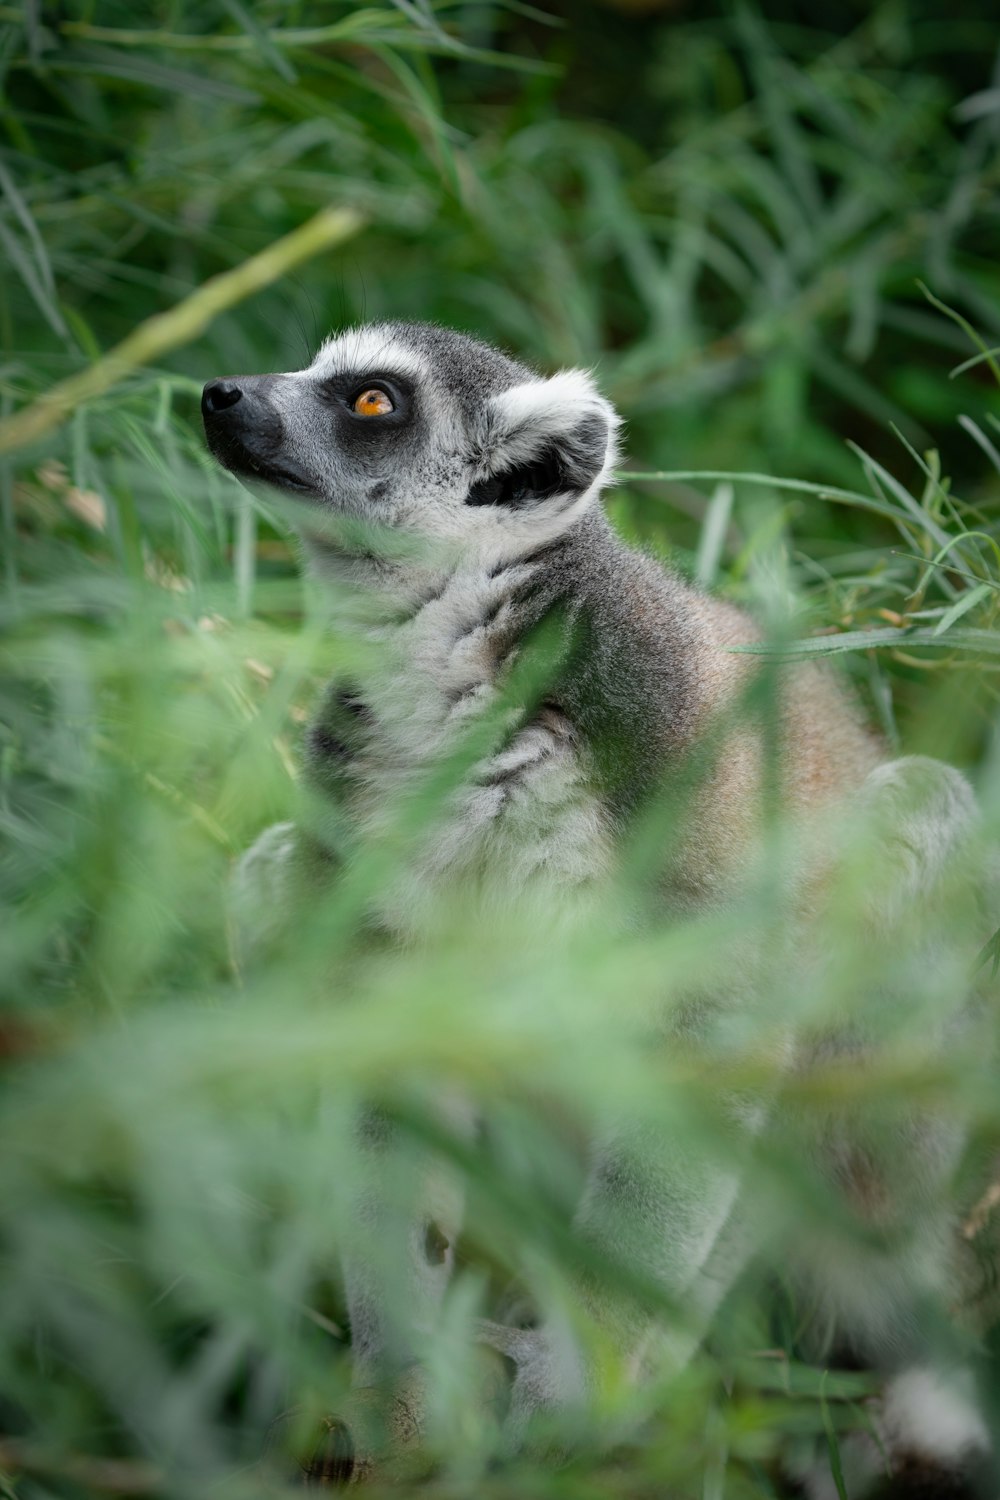 a lemur in the grass